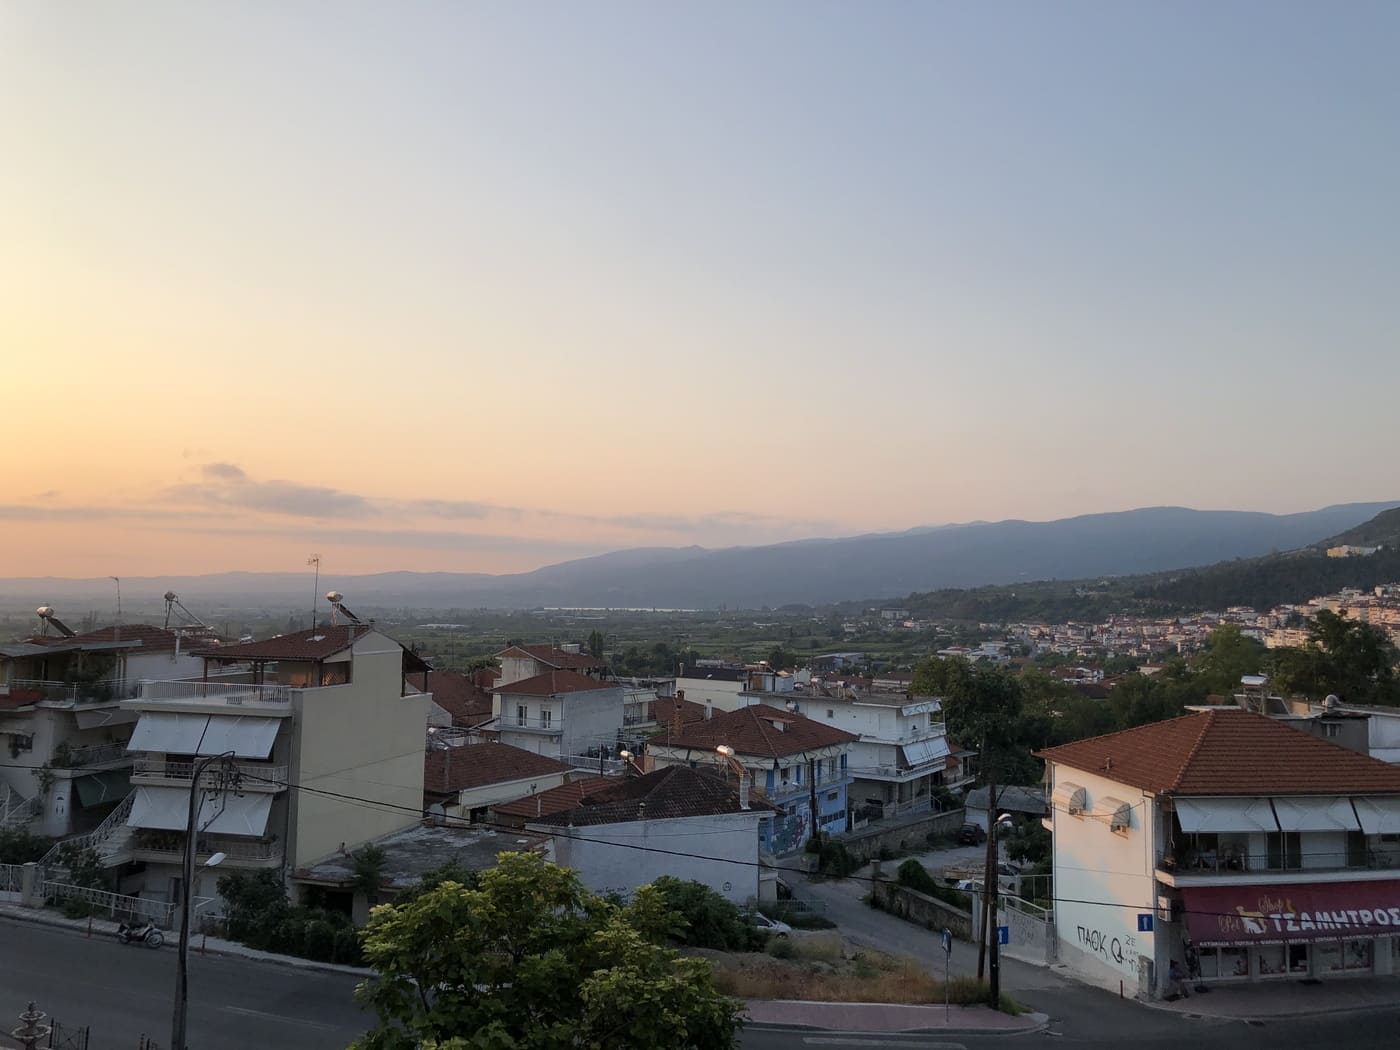 Ausblick auf Stadt Veria, Region Imathia, Sonnenuntergang, Berge, Häuser, Einstimmung auf die Tagestour